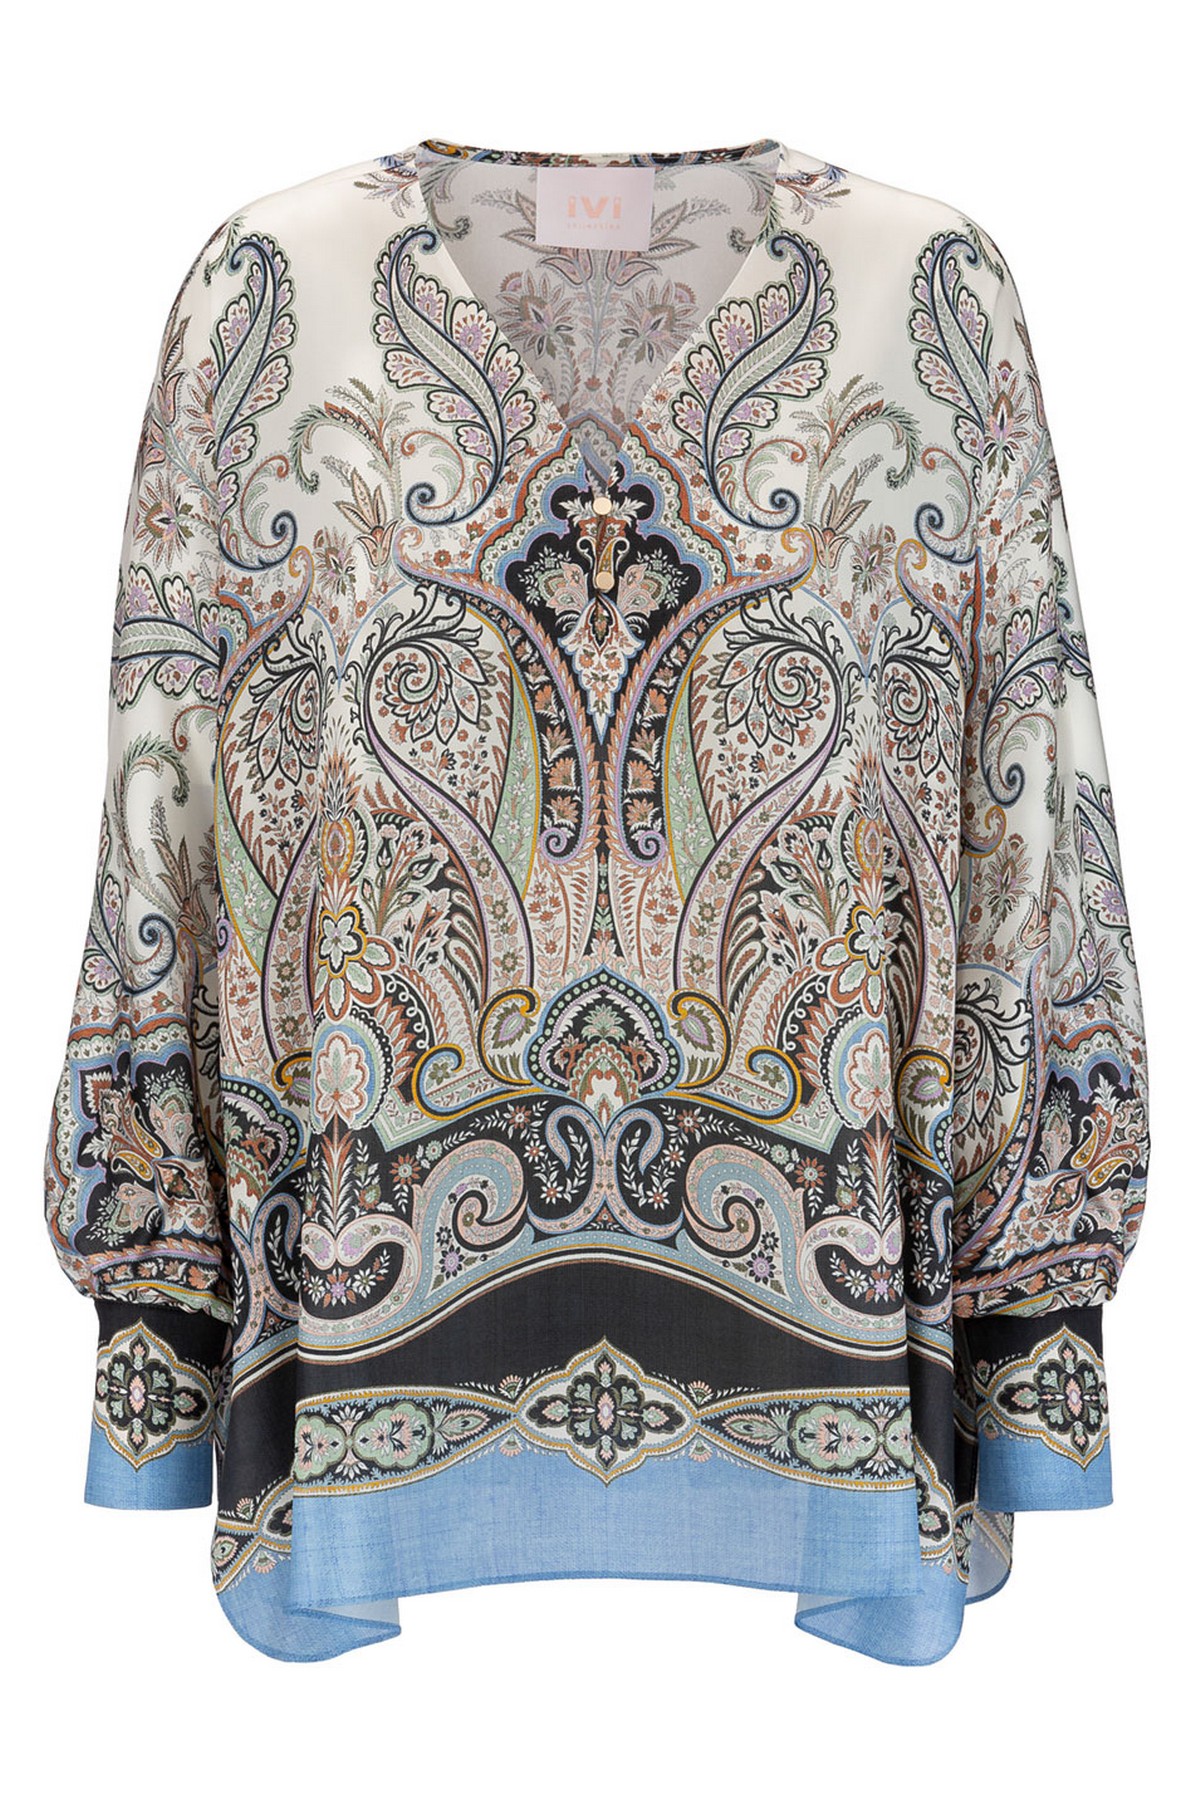 Shirtbloes V paisleyprint in de kleur ecru van het merk Ivi Collection